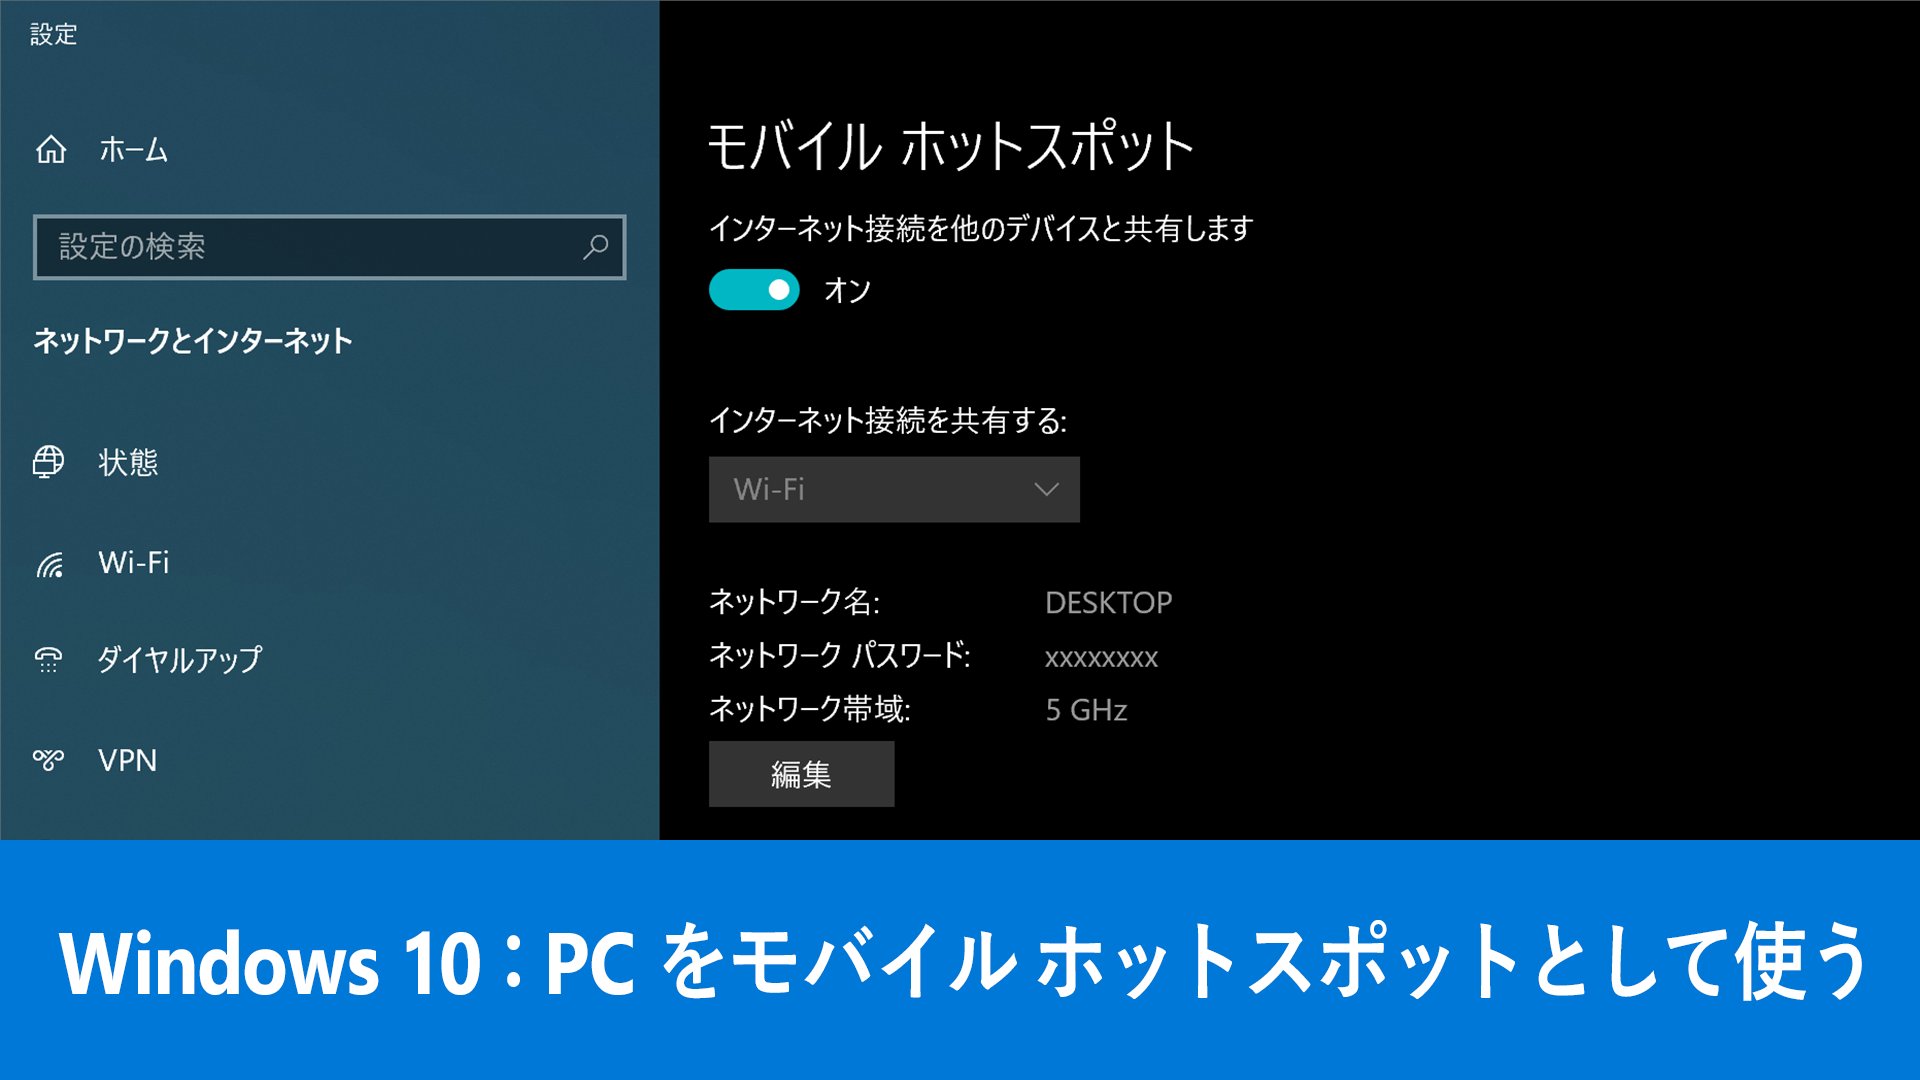 Windows Japan Lan ケーブルで接続した Pc から Wi Fi を飛ばす方法 Windows10 では インターネット接続を Pc の Wi Fi 経由でスマホやタブレットなどの他のデバイスと共有できます 出張先で Wi Fi がなくて困ったときや 無線 Lan の整備中に